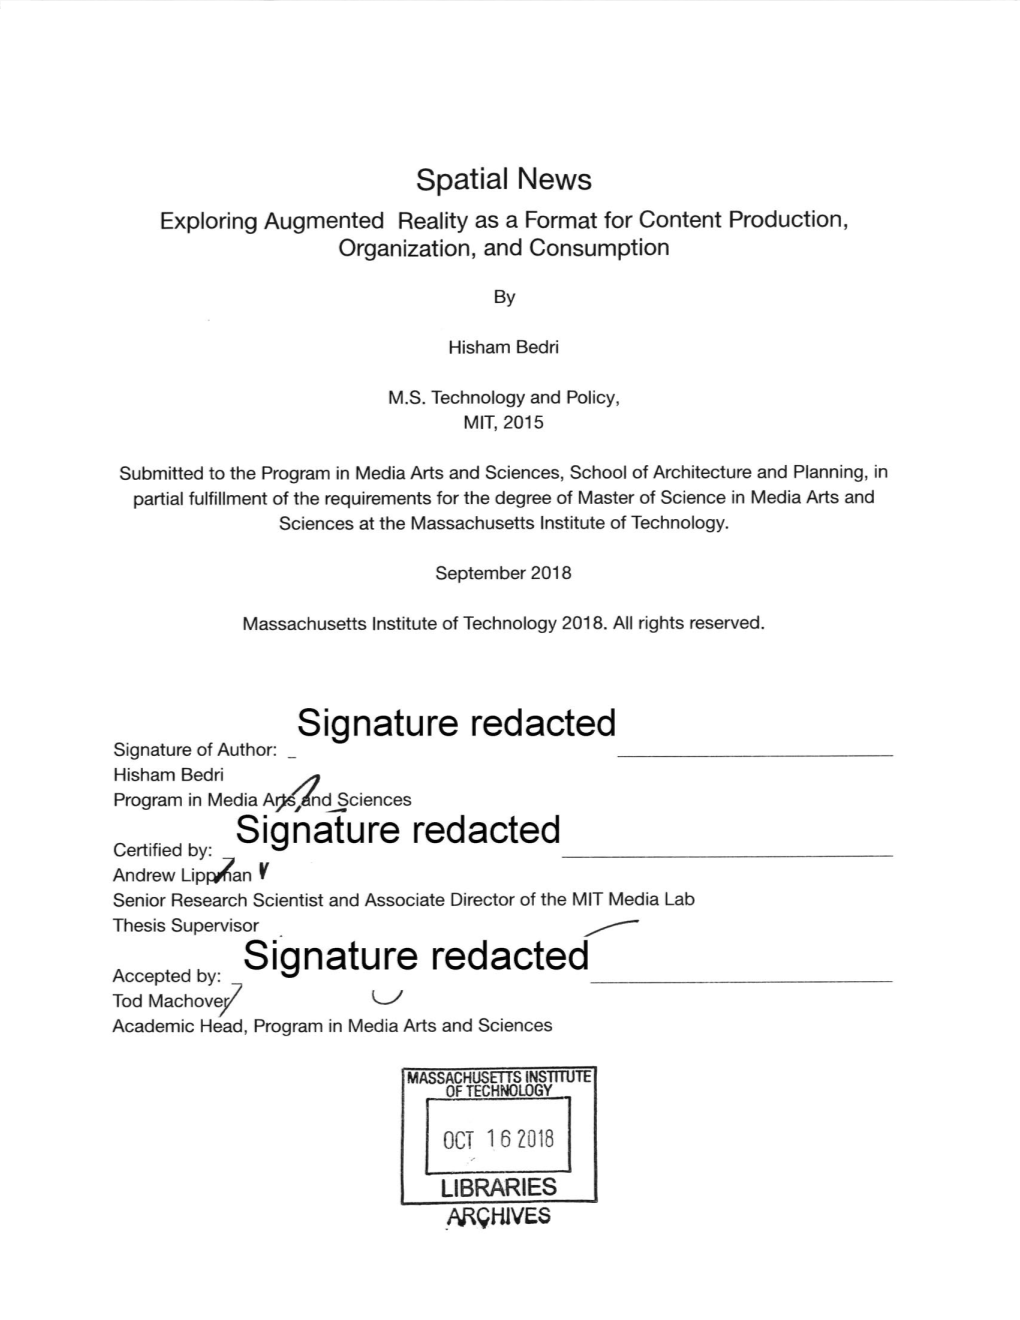 Signature Redacted Hisham Bedri Program in Media and Sciences